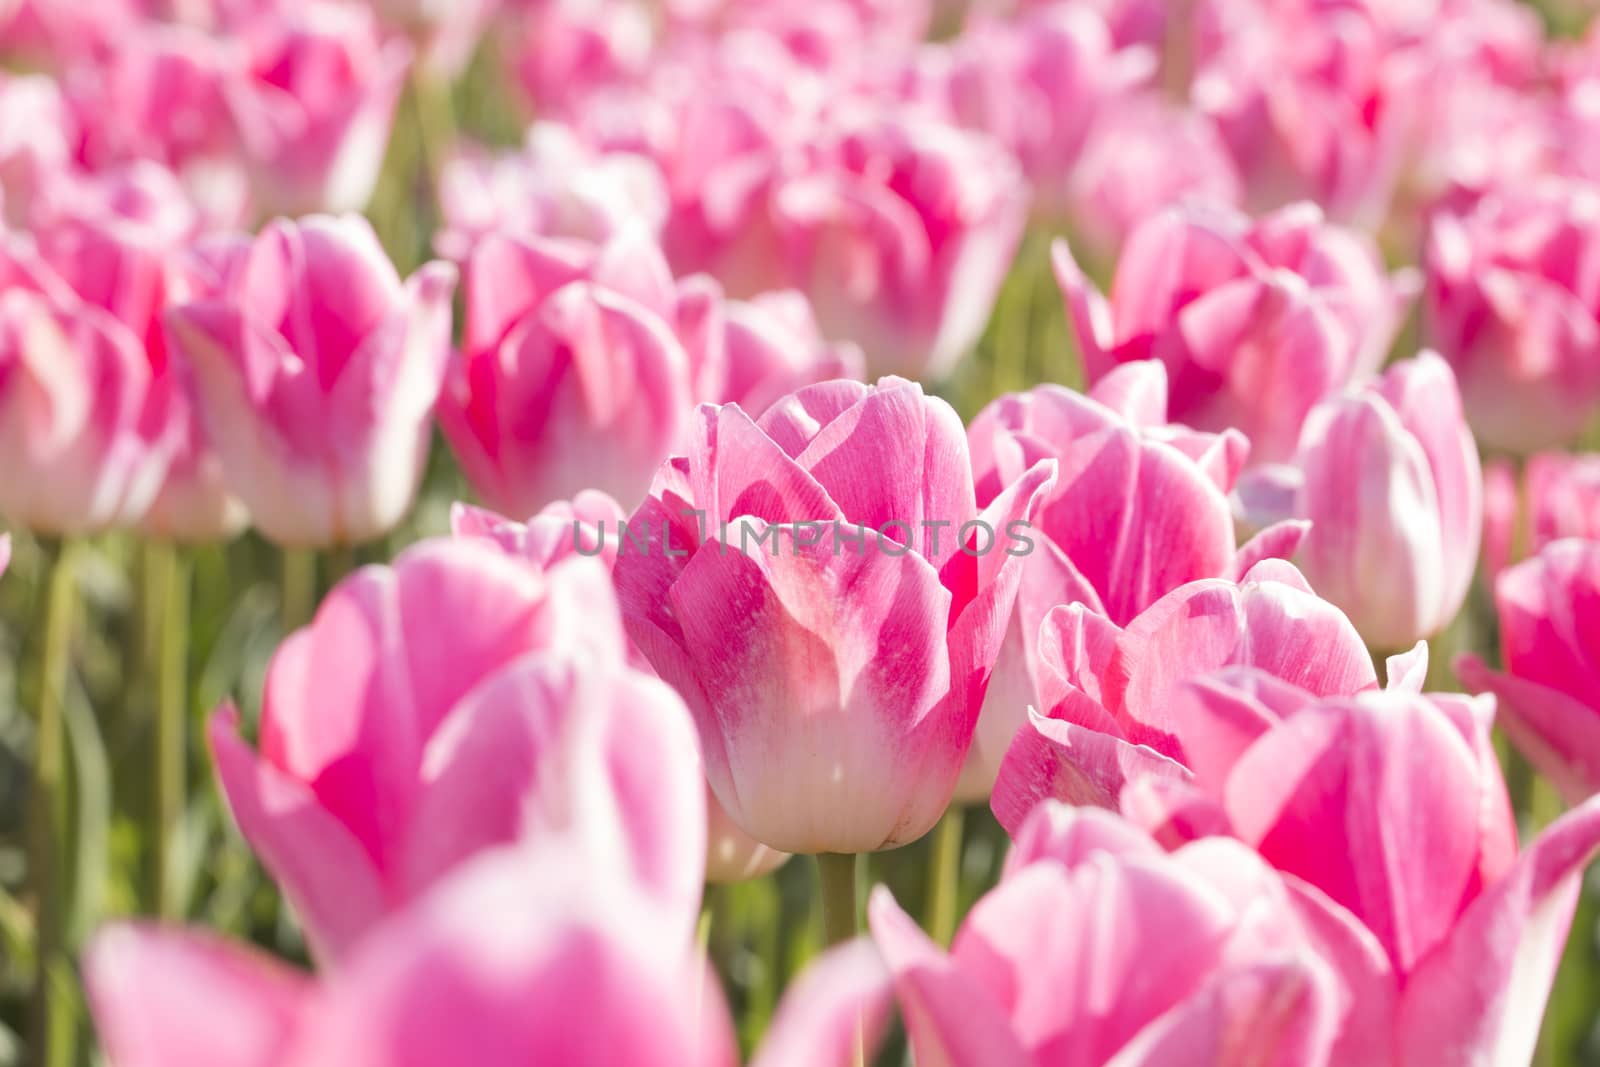 Field of pink tulips by avanheertum